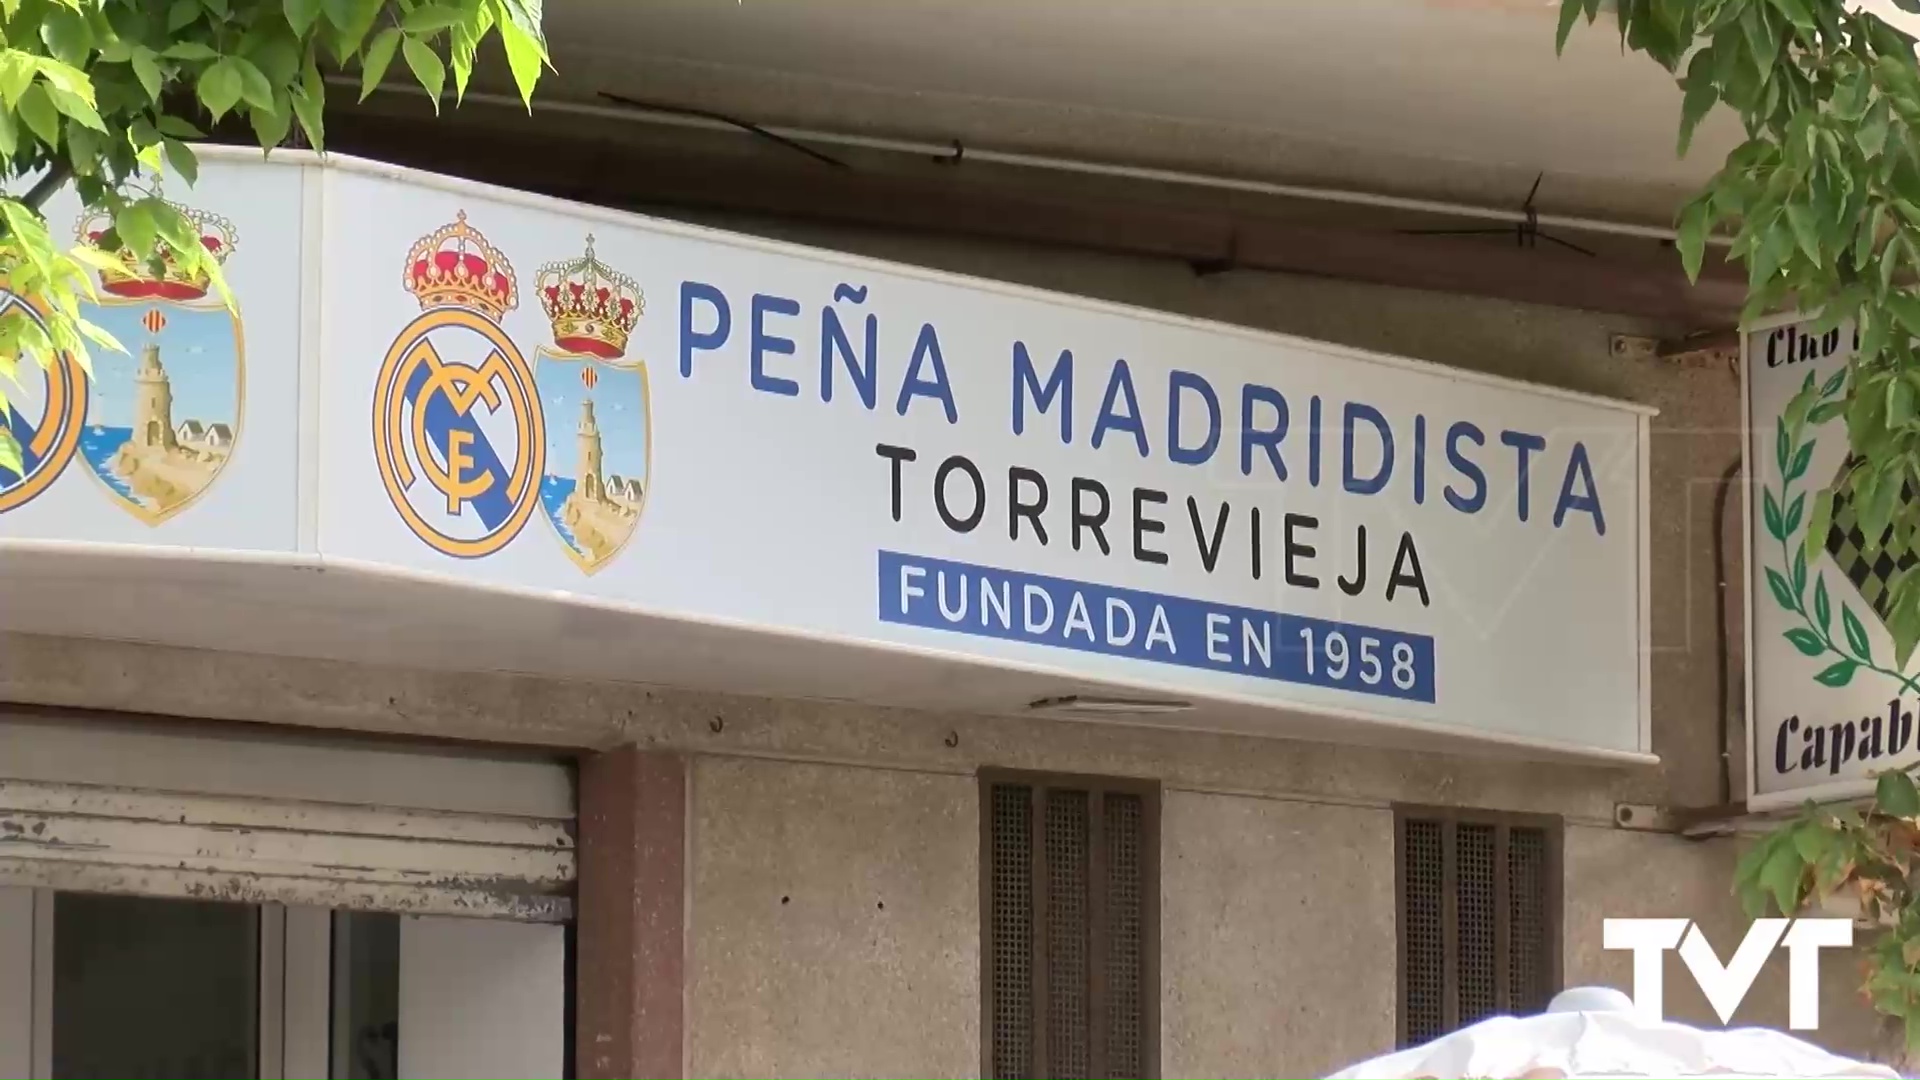 Imagen de La peña madridista de Torrevieja estrena nueva sede